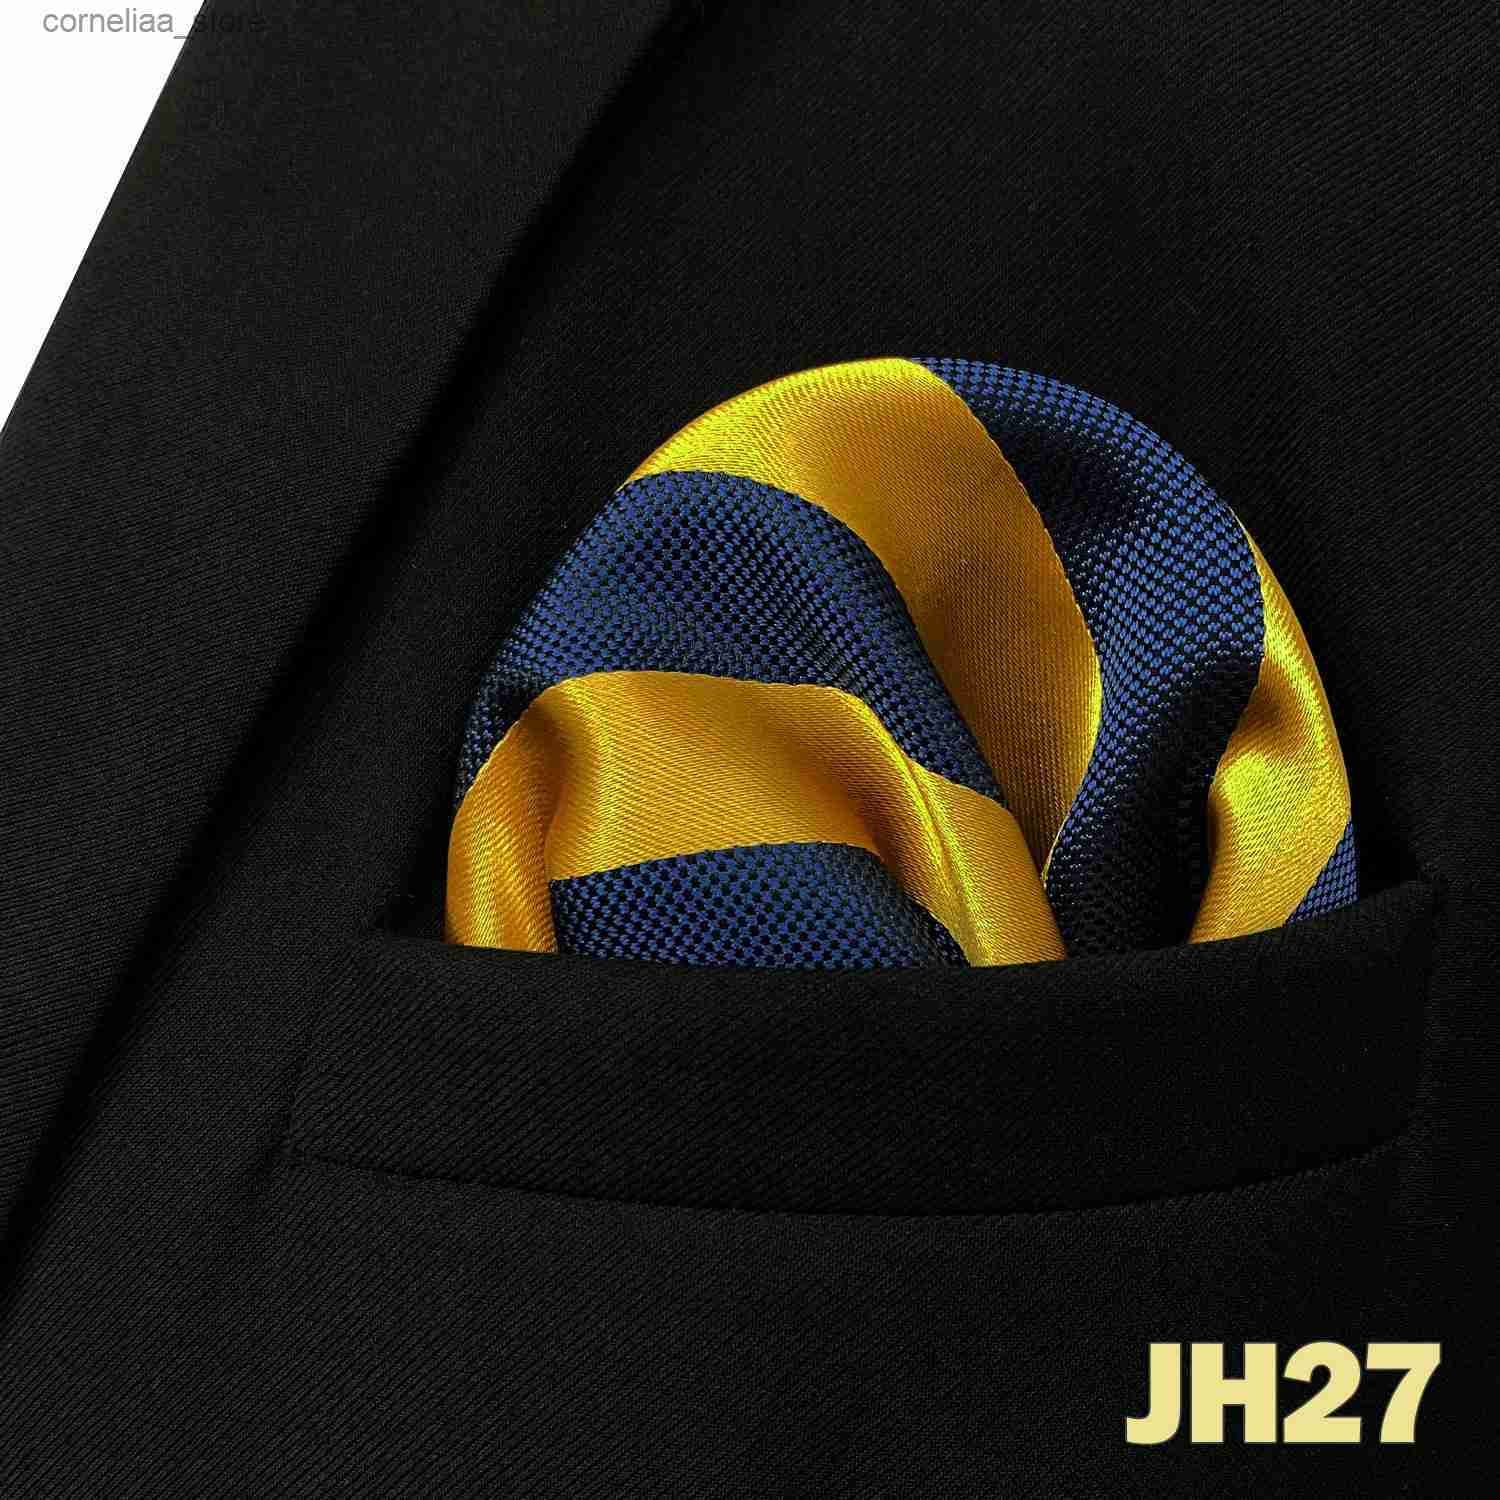 Jh27